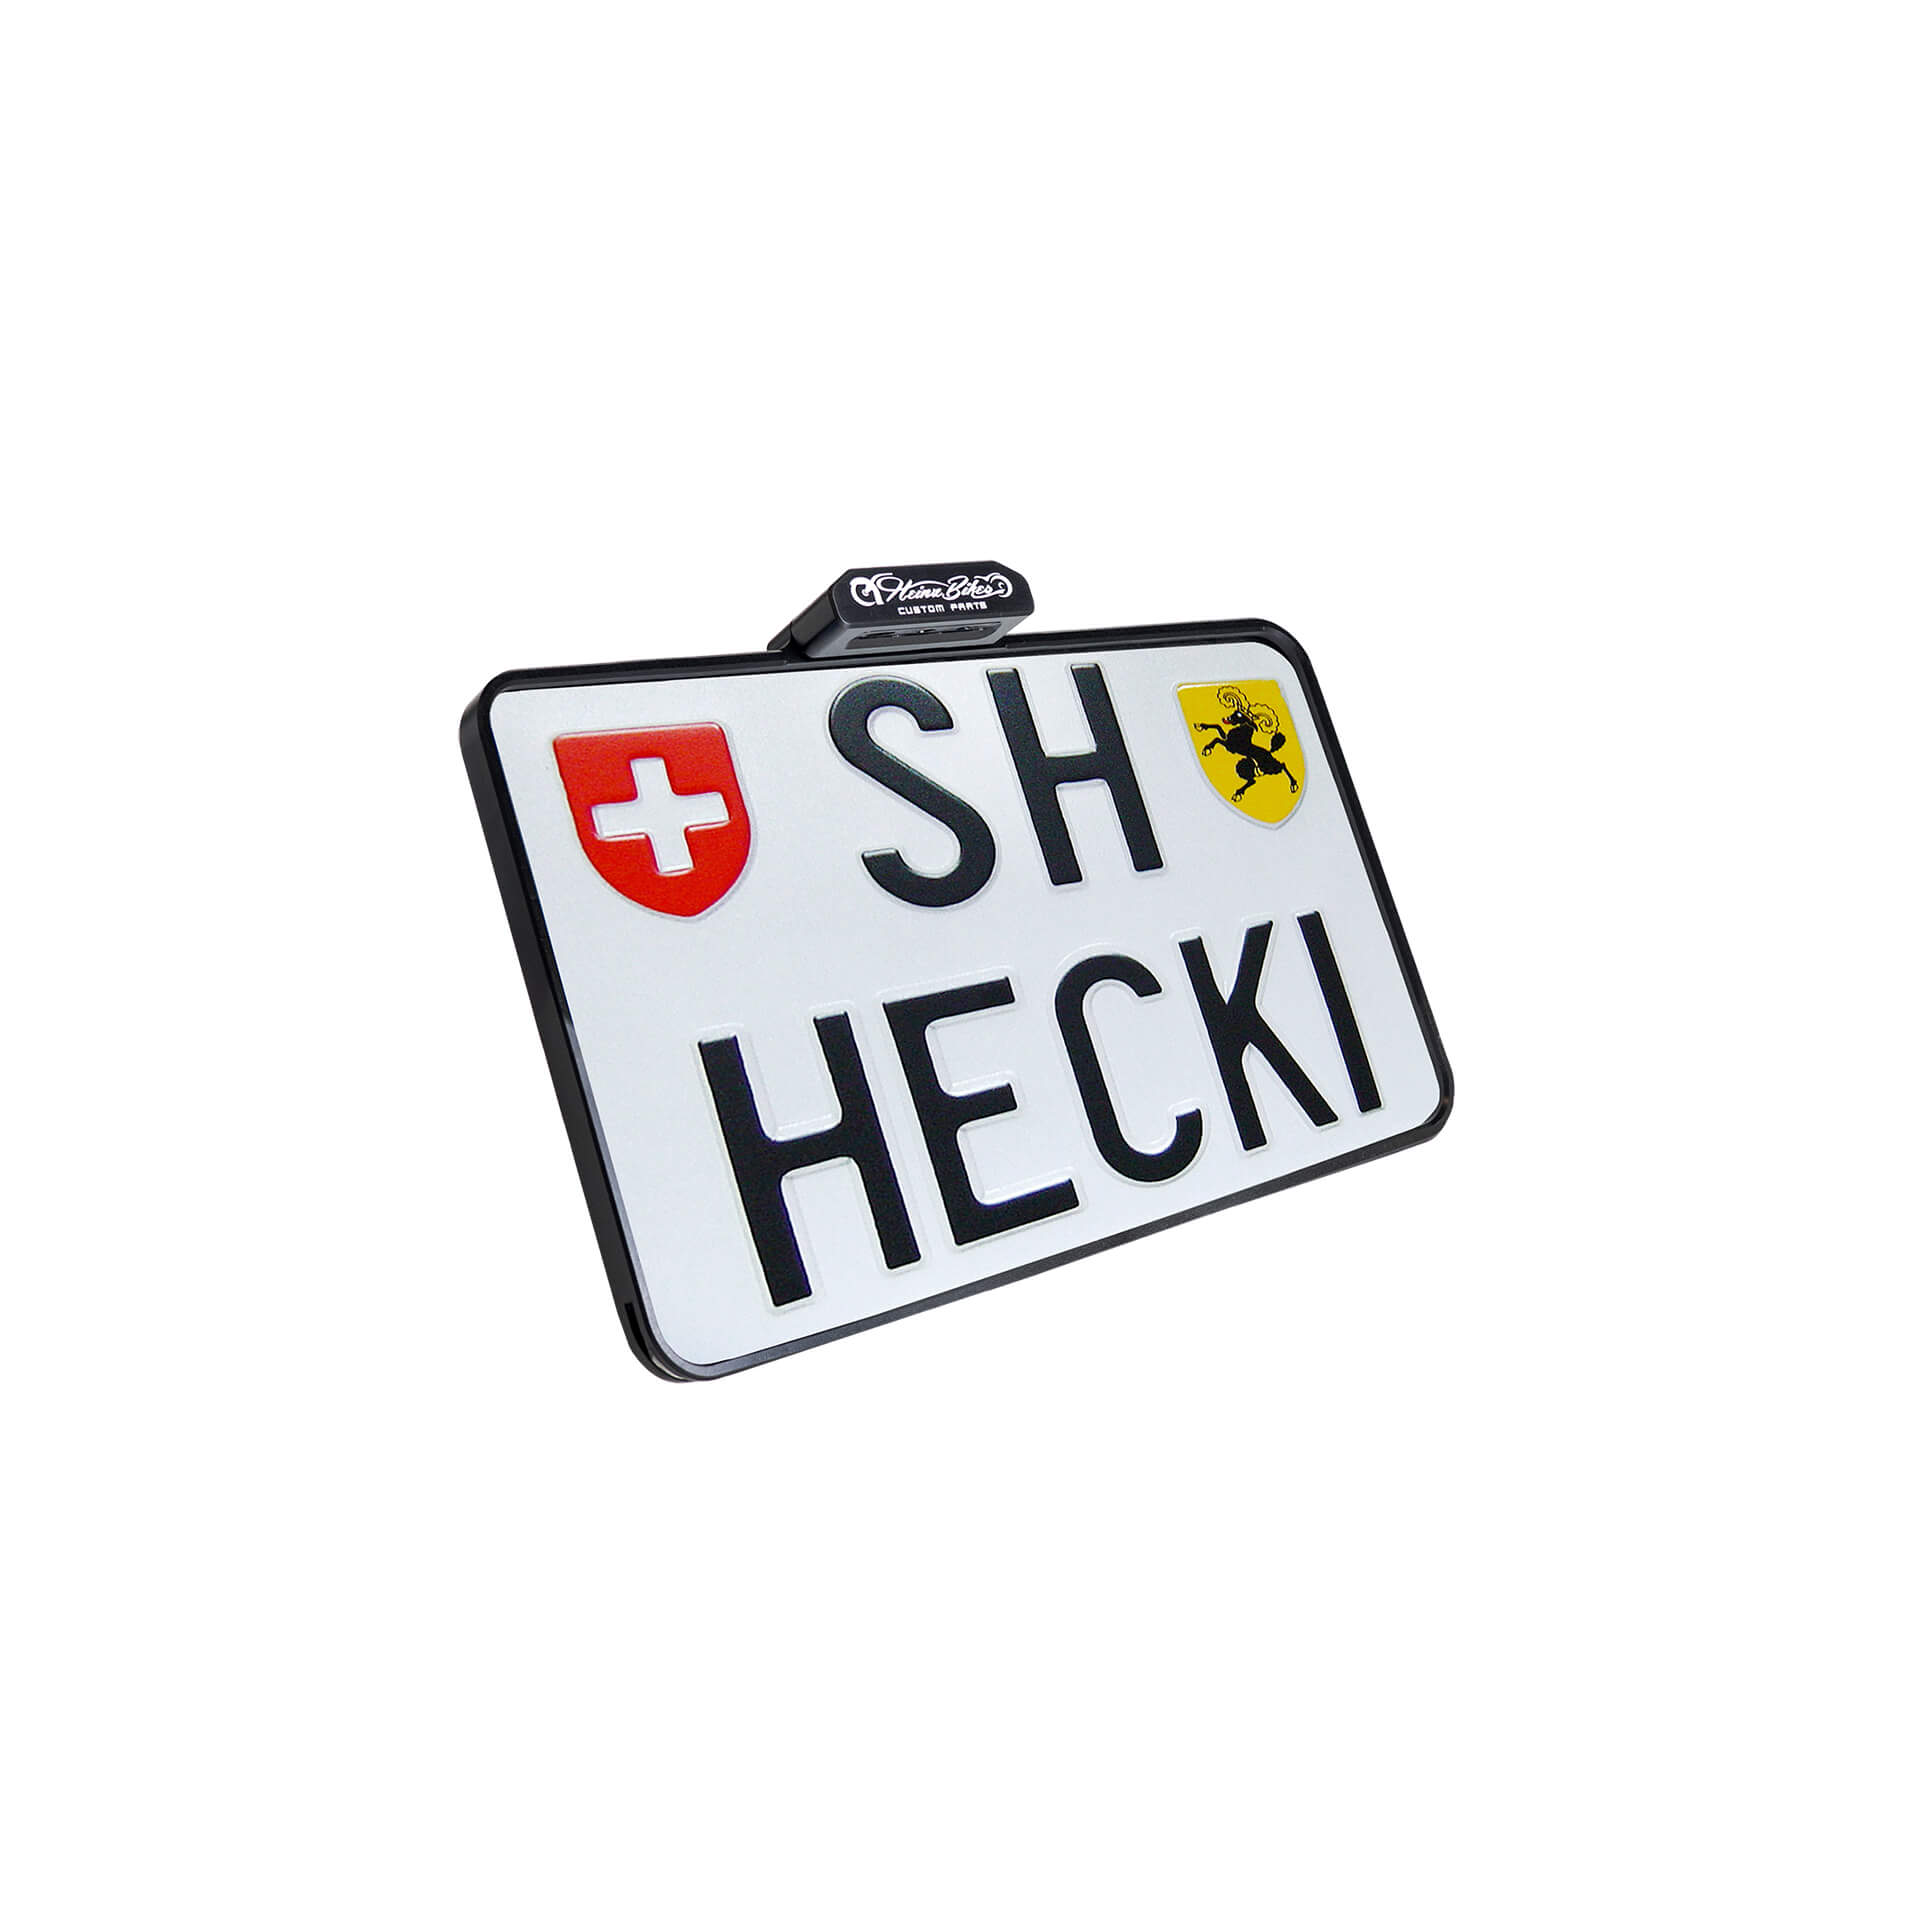 heinzbikes SLIP INN Kennzeichenhalter inkl. Kennzeichenbeleuchtung, Schweizer Ausführung